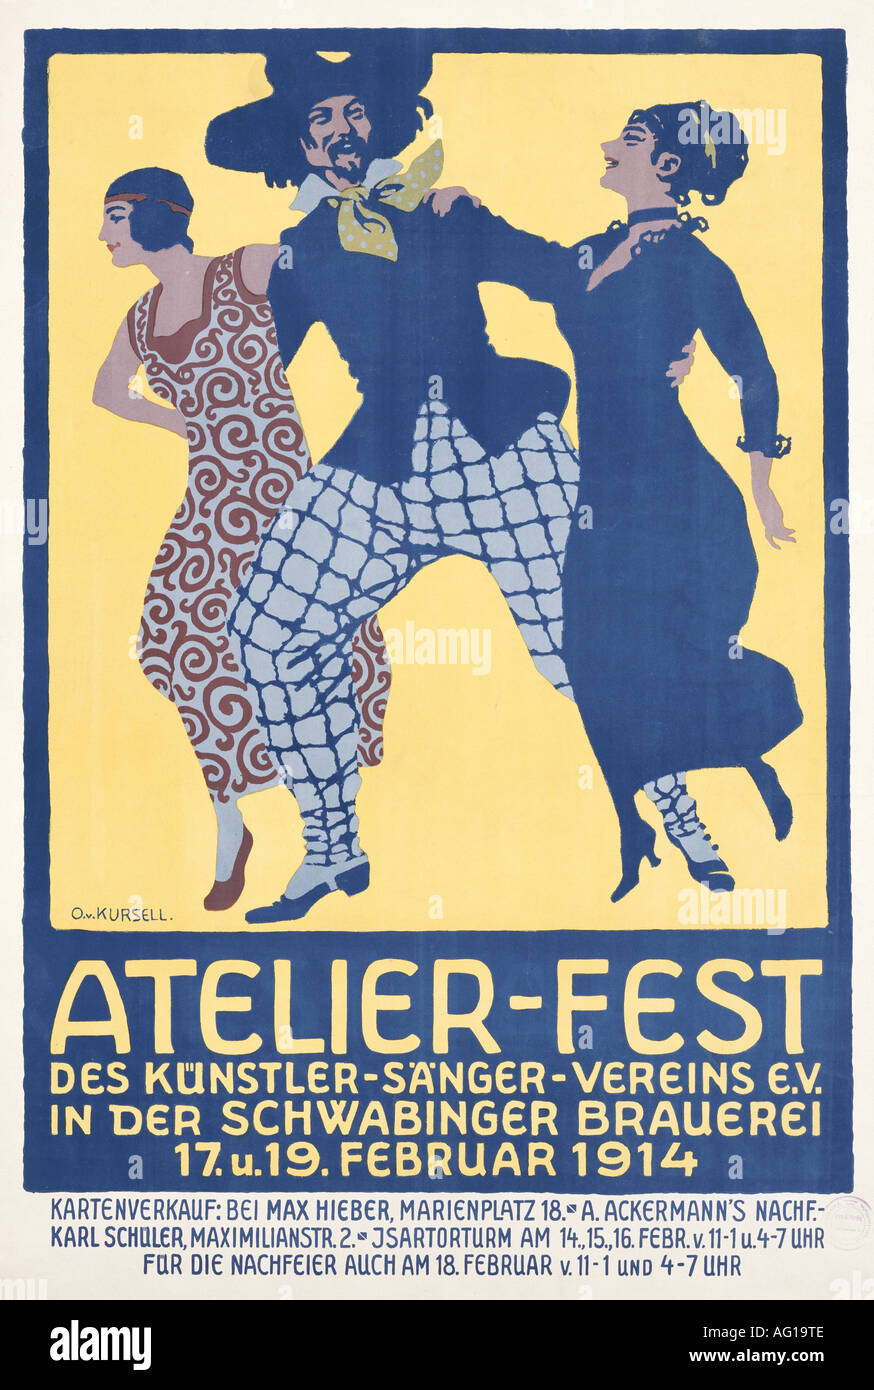 festivity, balls and parties, Schwabinger Brauerei, 'Atelier - Fest des Künstler - Sänger - Vereins e.V.',  Munich, 1914, poster, design by Otto von Kursell (1884 - 1967), , Stock Photo